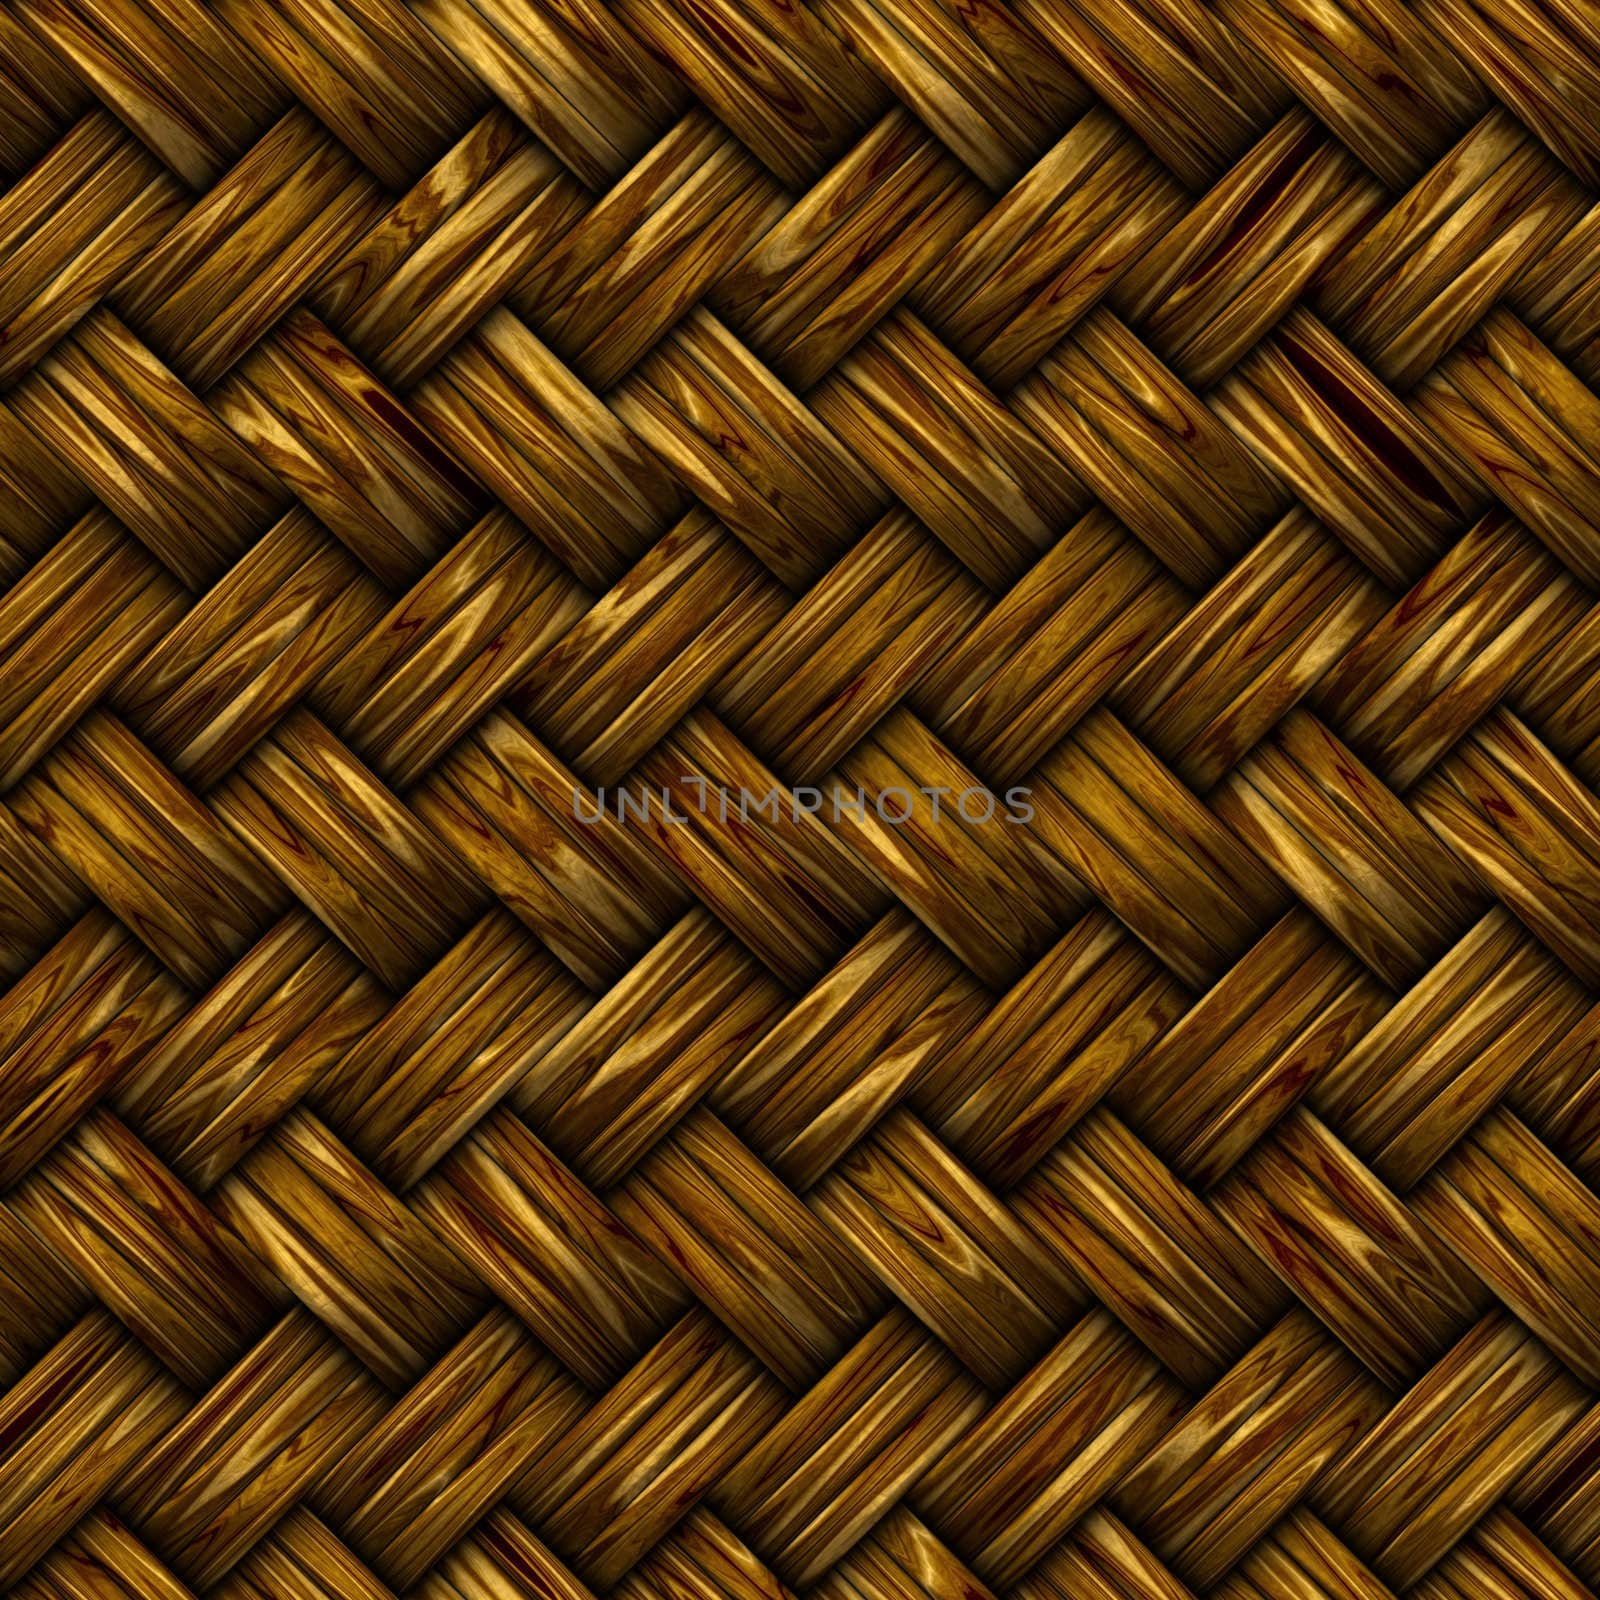 woven wicker basket by clearviewstock